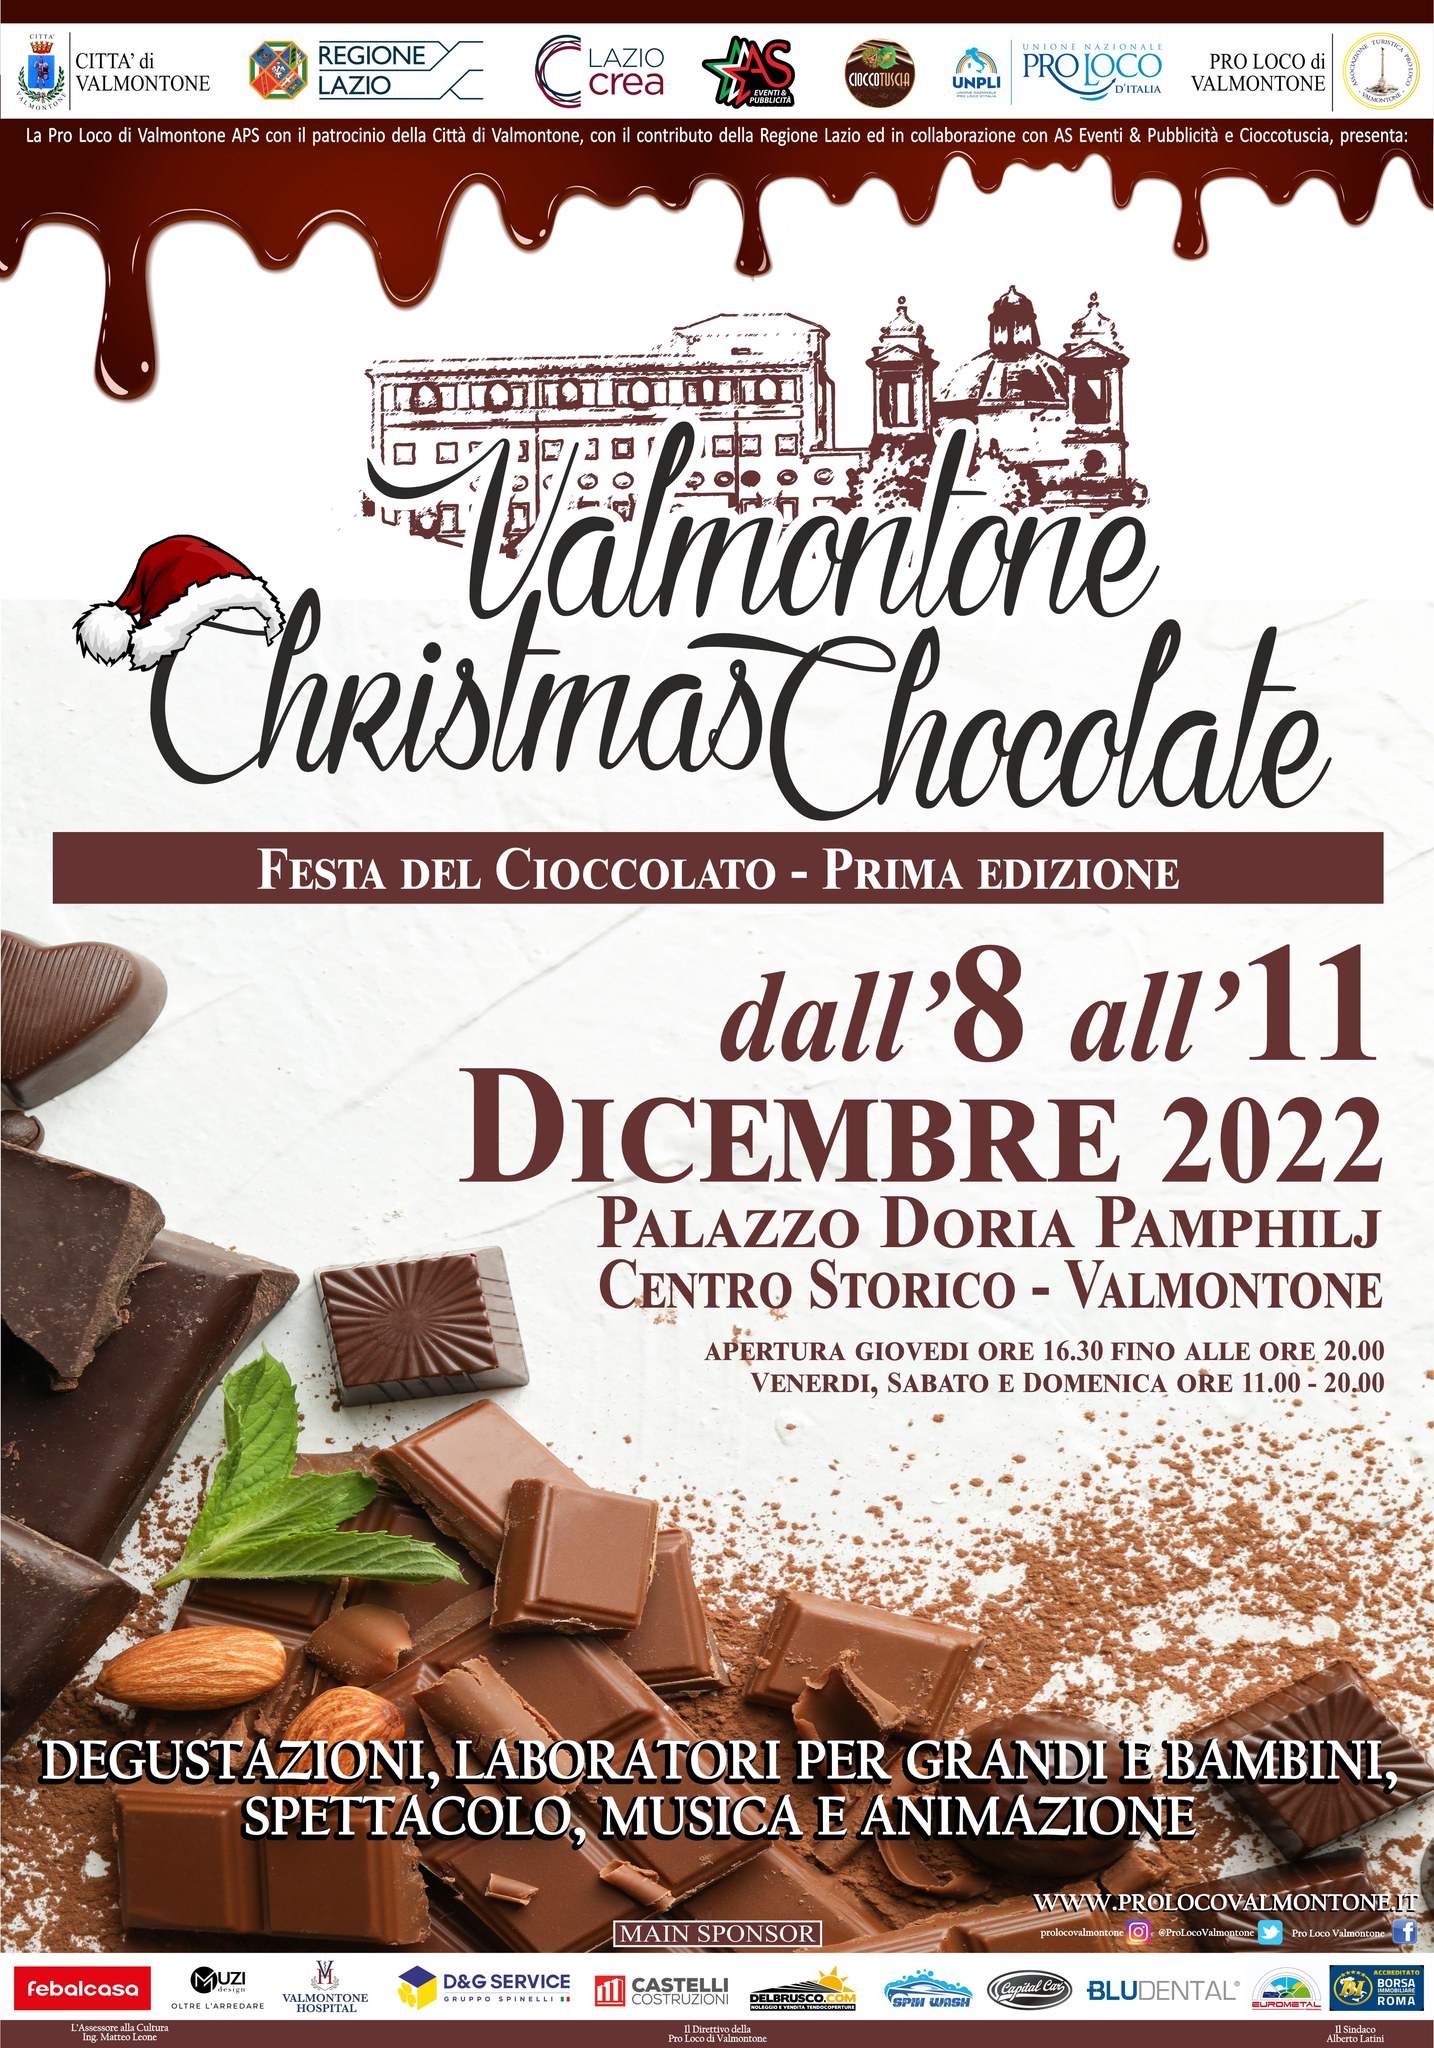 https://www.lacicala.org/immagini_news/21-11-2022/valmontone-christmas-chocolate--la-festa-del-cioccolato--prima-edizione-.jpg